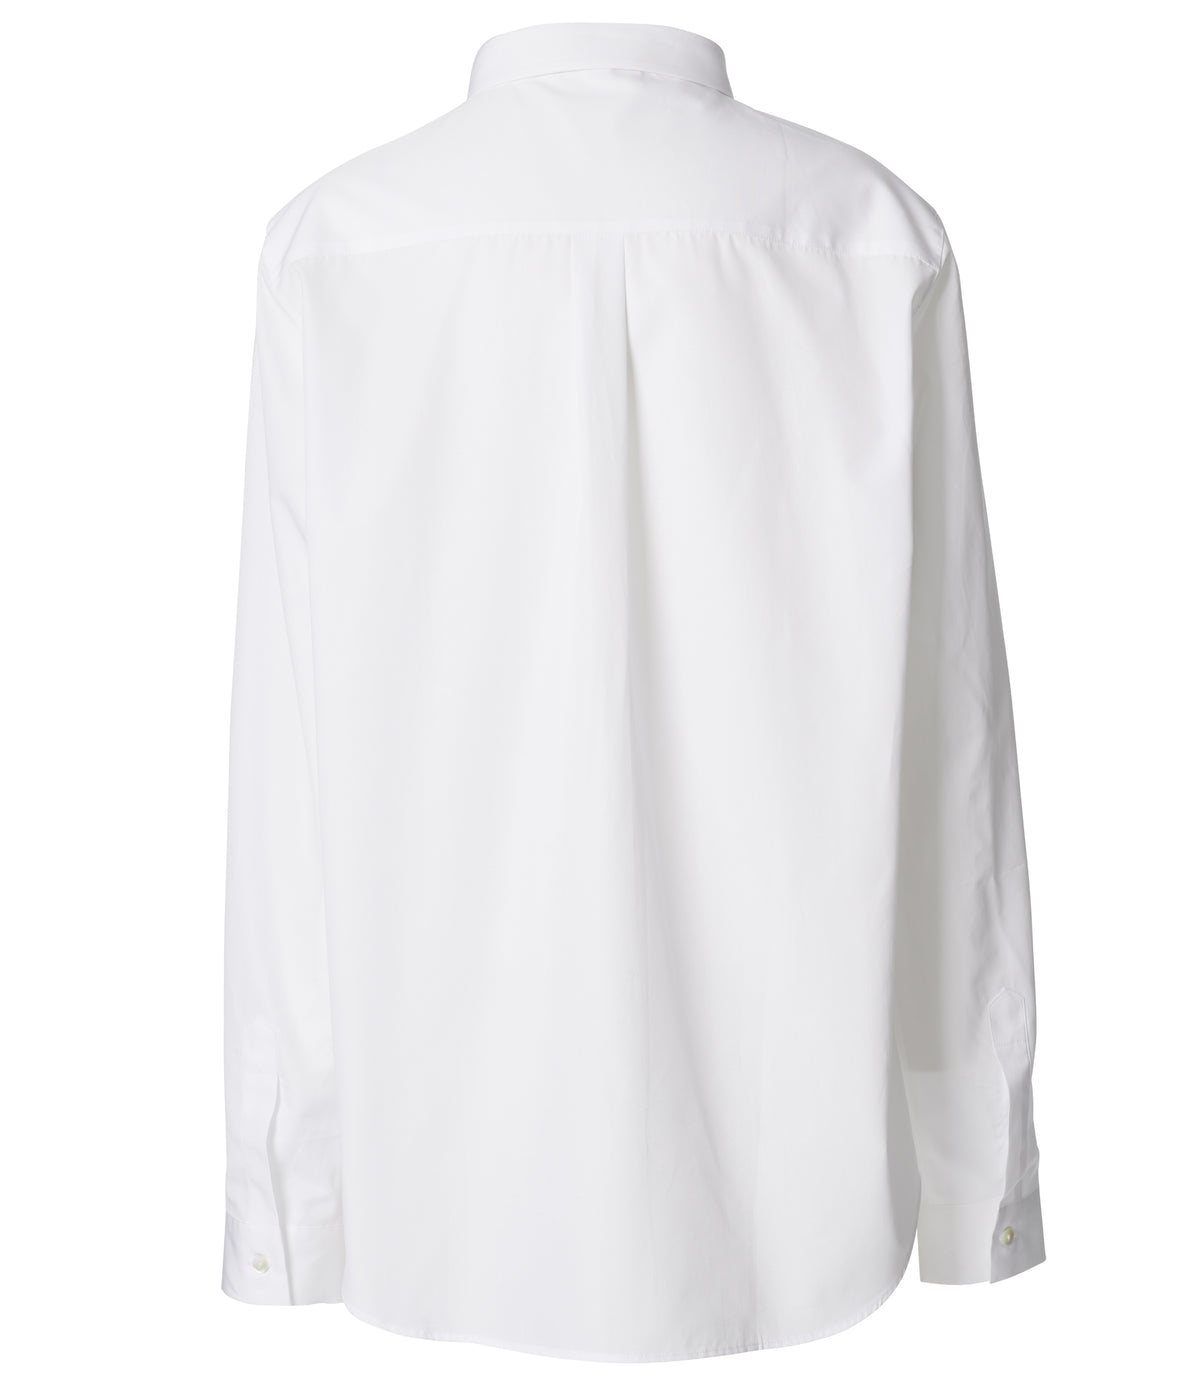 Jean Maroe - Bluse mit Knopfleiste aus Baumwolle in weiß